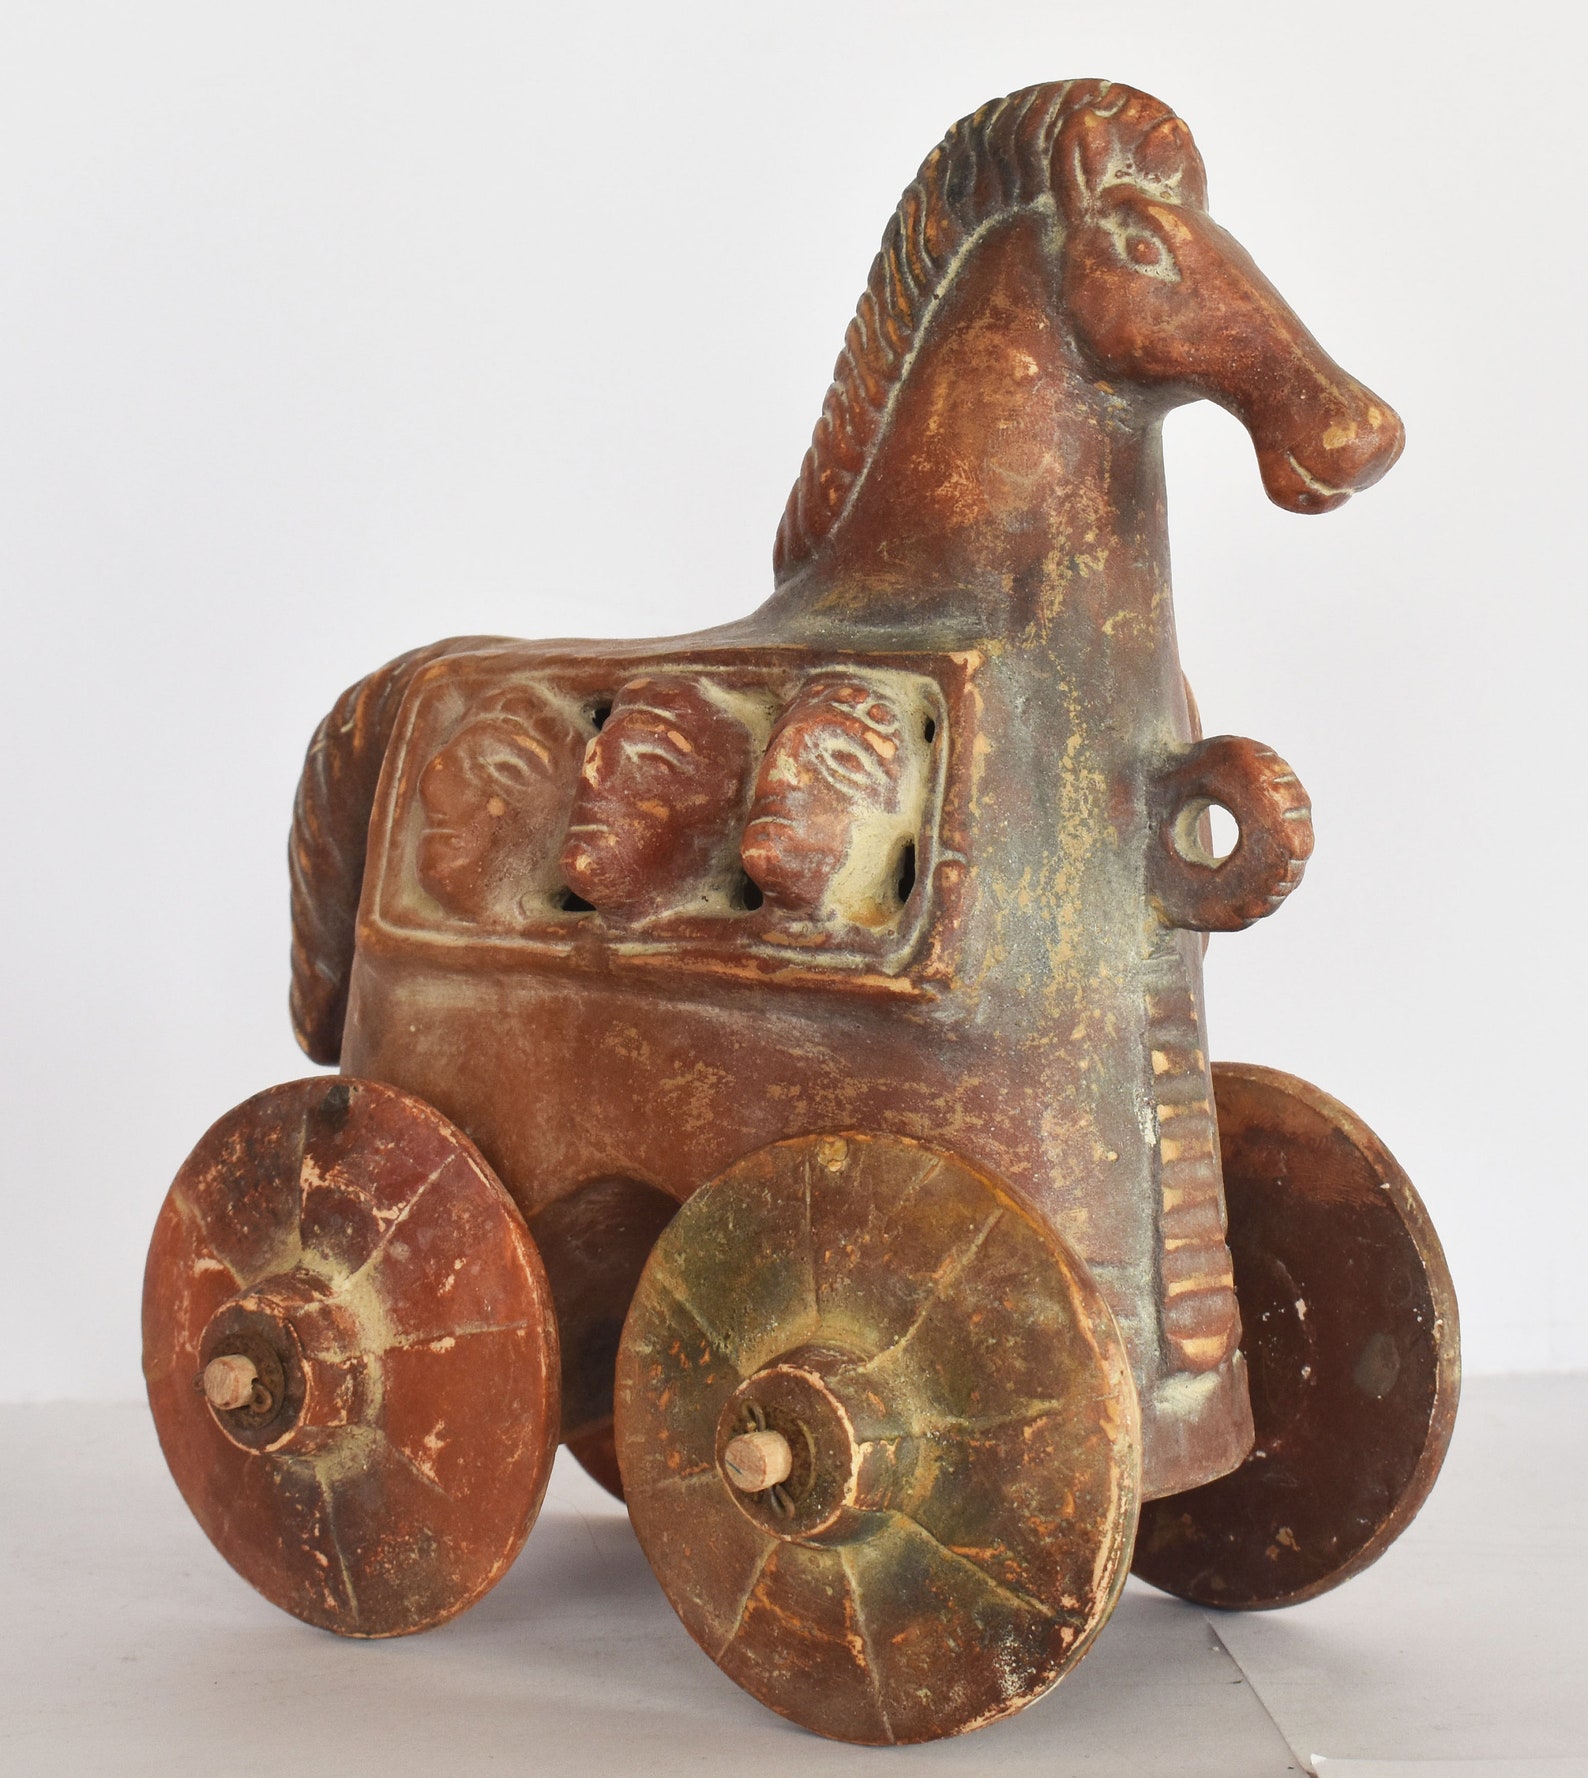 Trojan Horse on Wheels Hollow Greek Horse Trojan War | Etsy